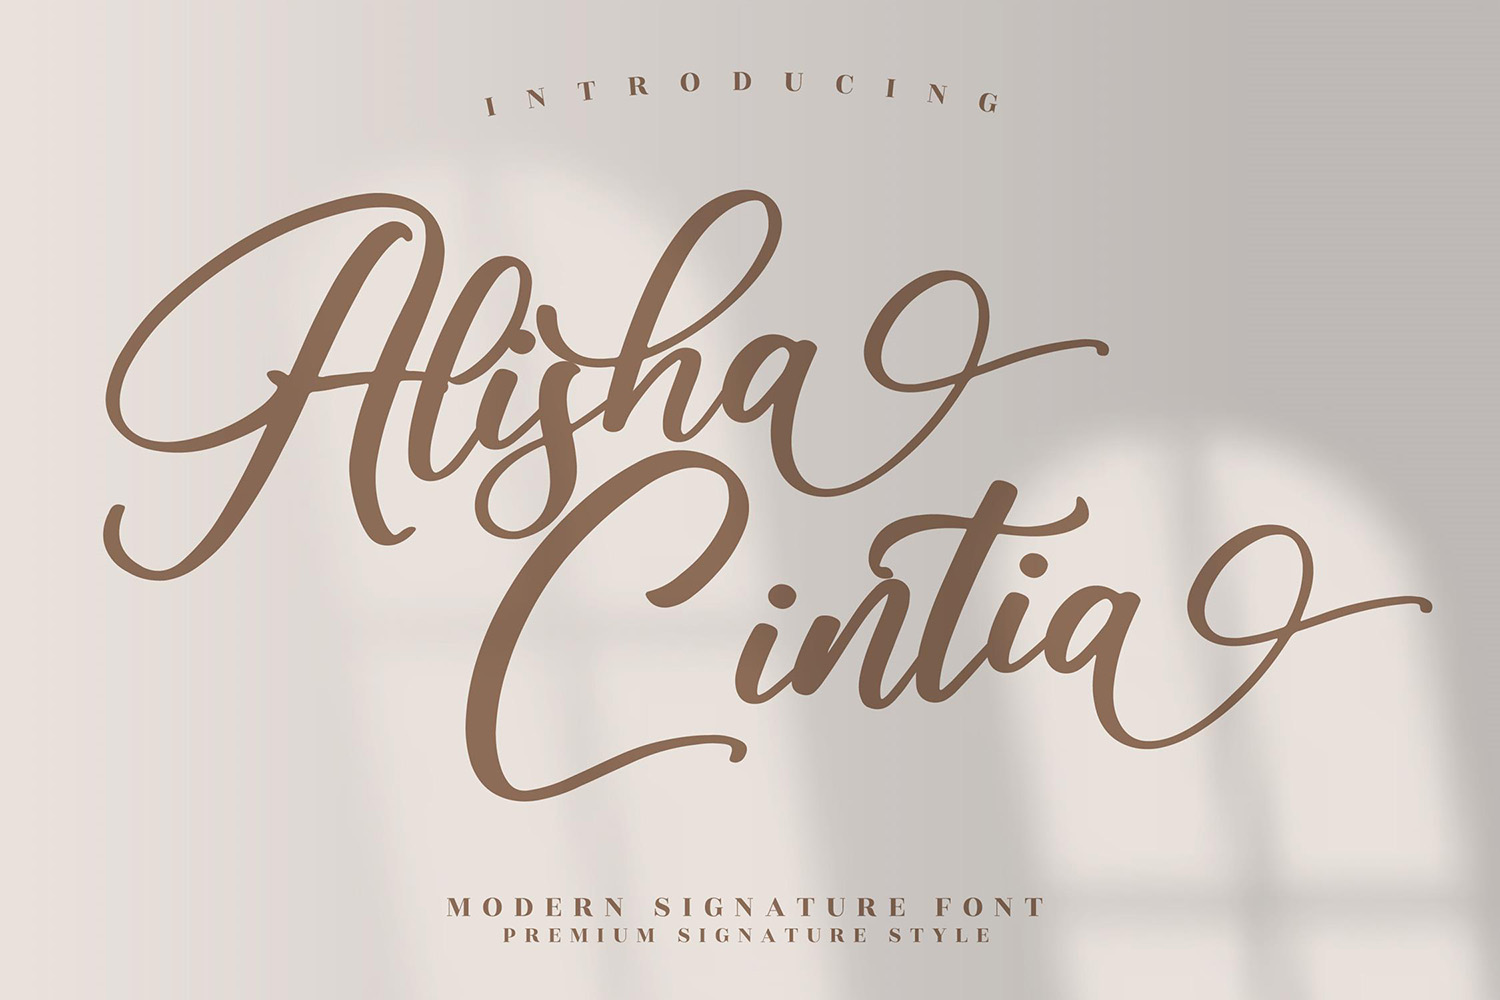 Alisha Cintia Free Font